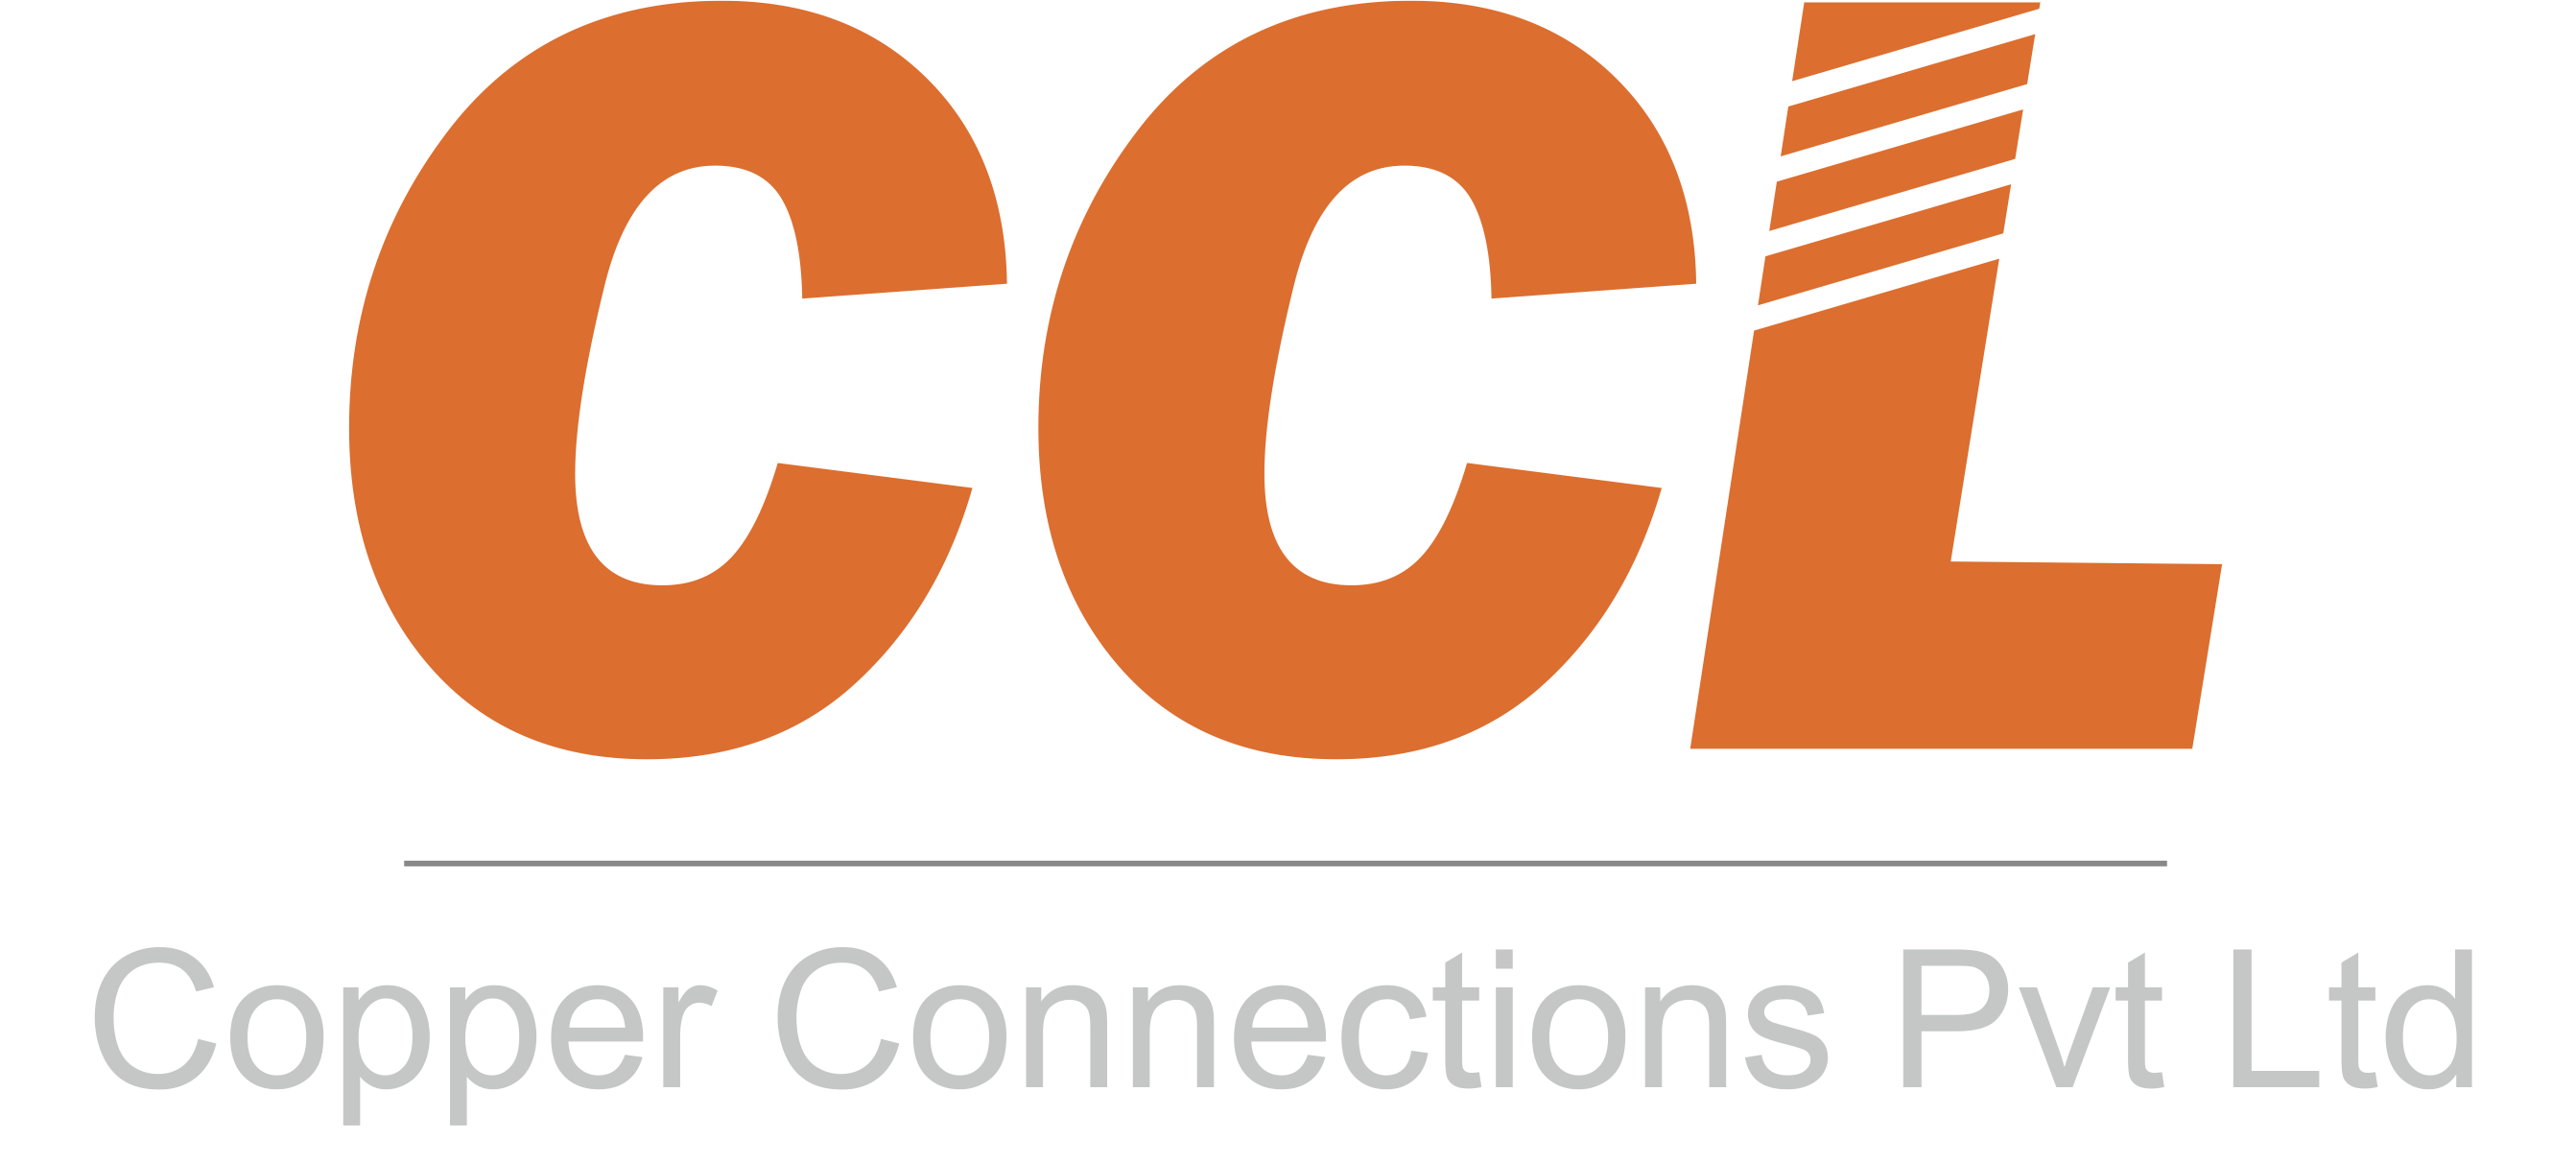 Copper Connections Pvt Ltd